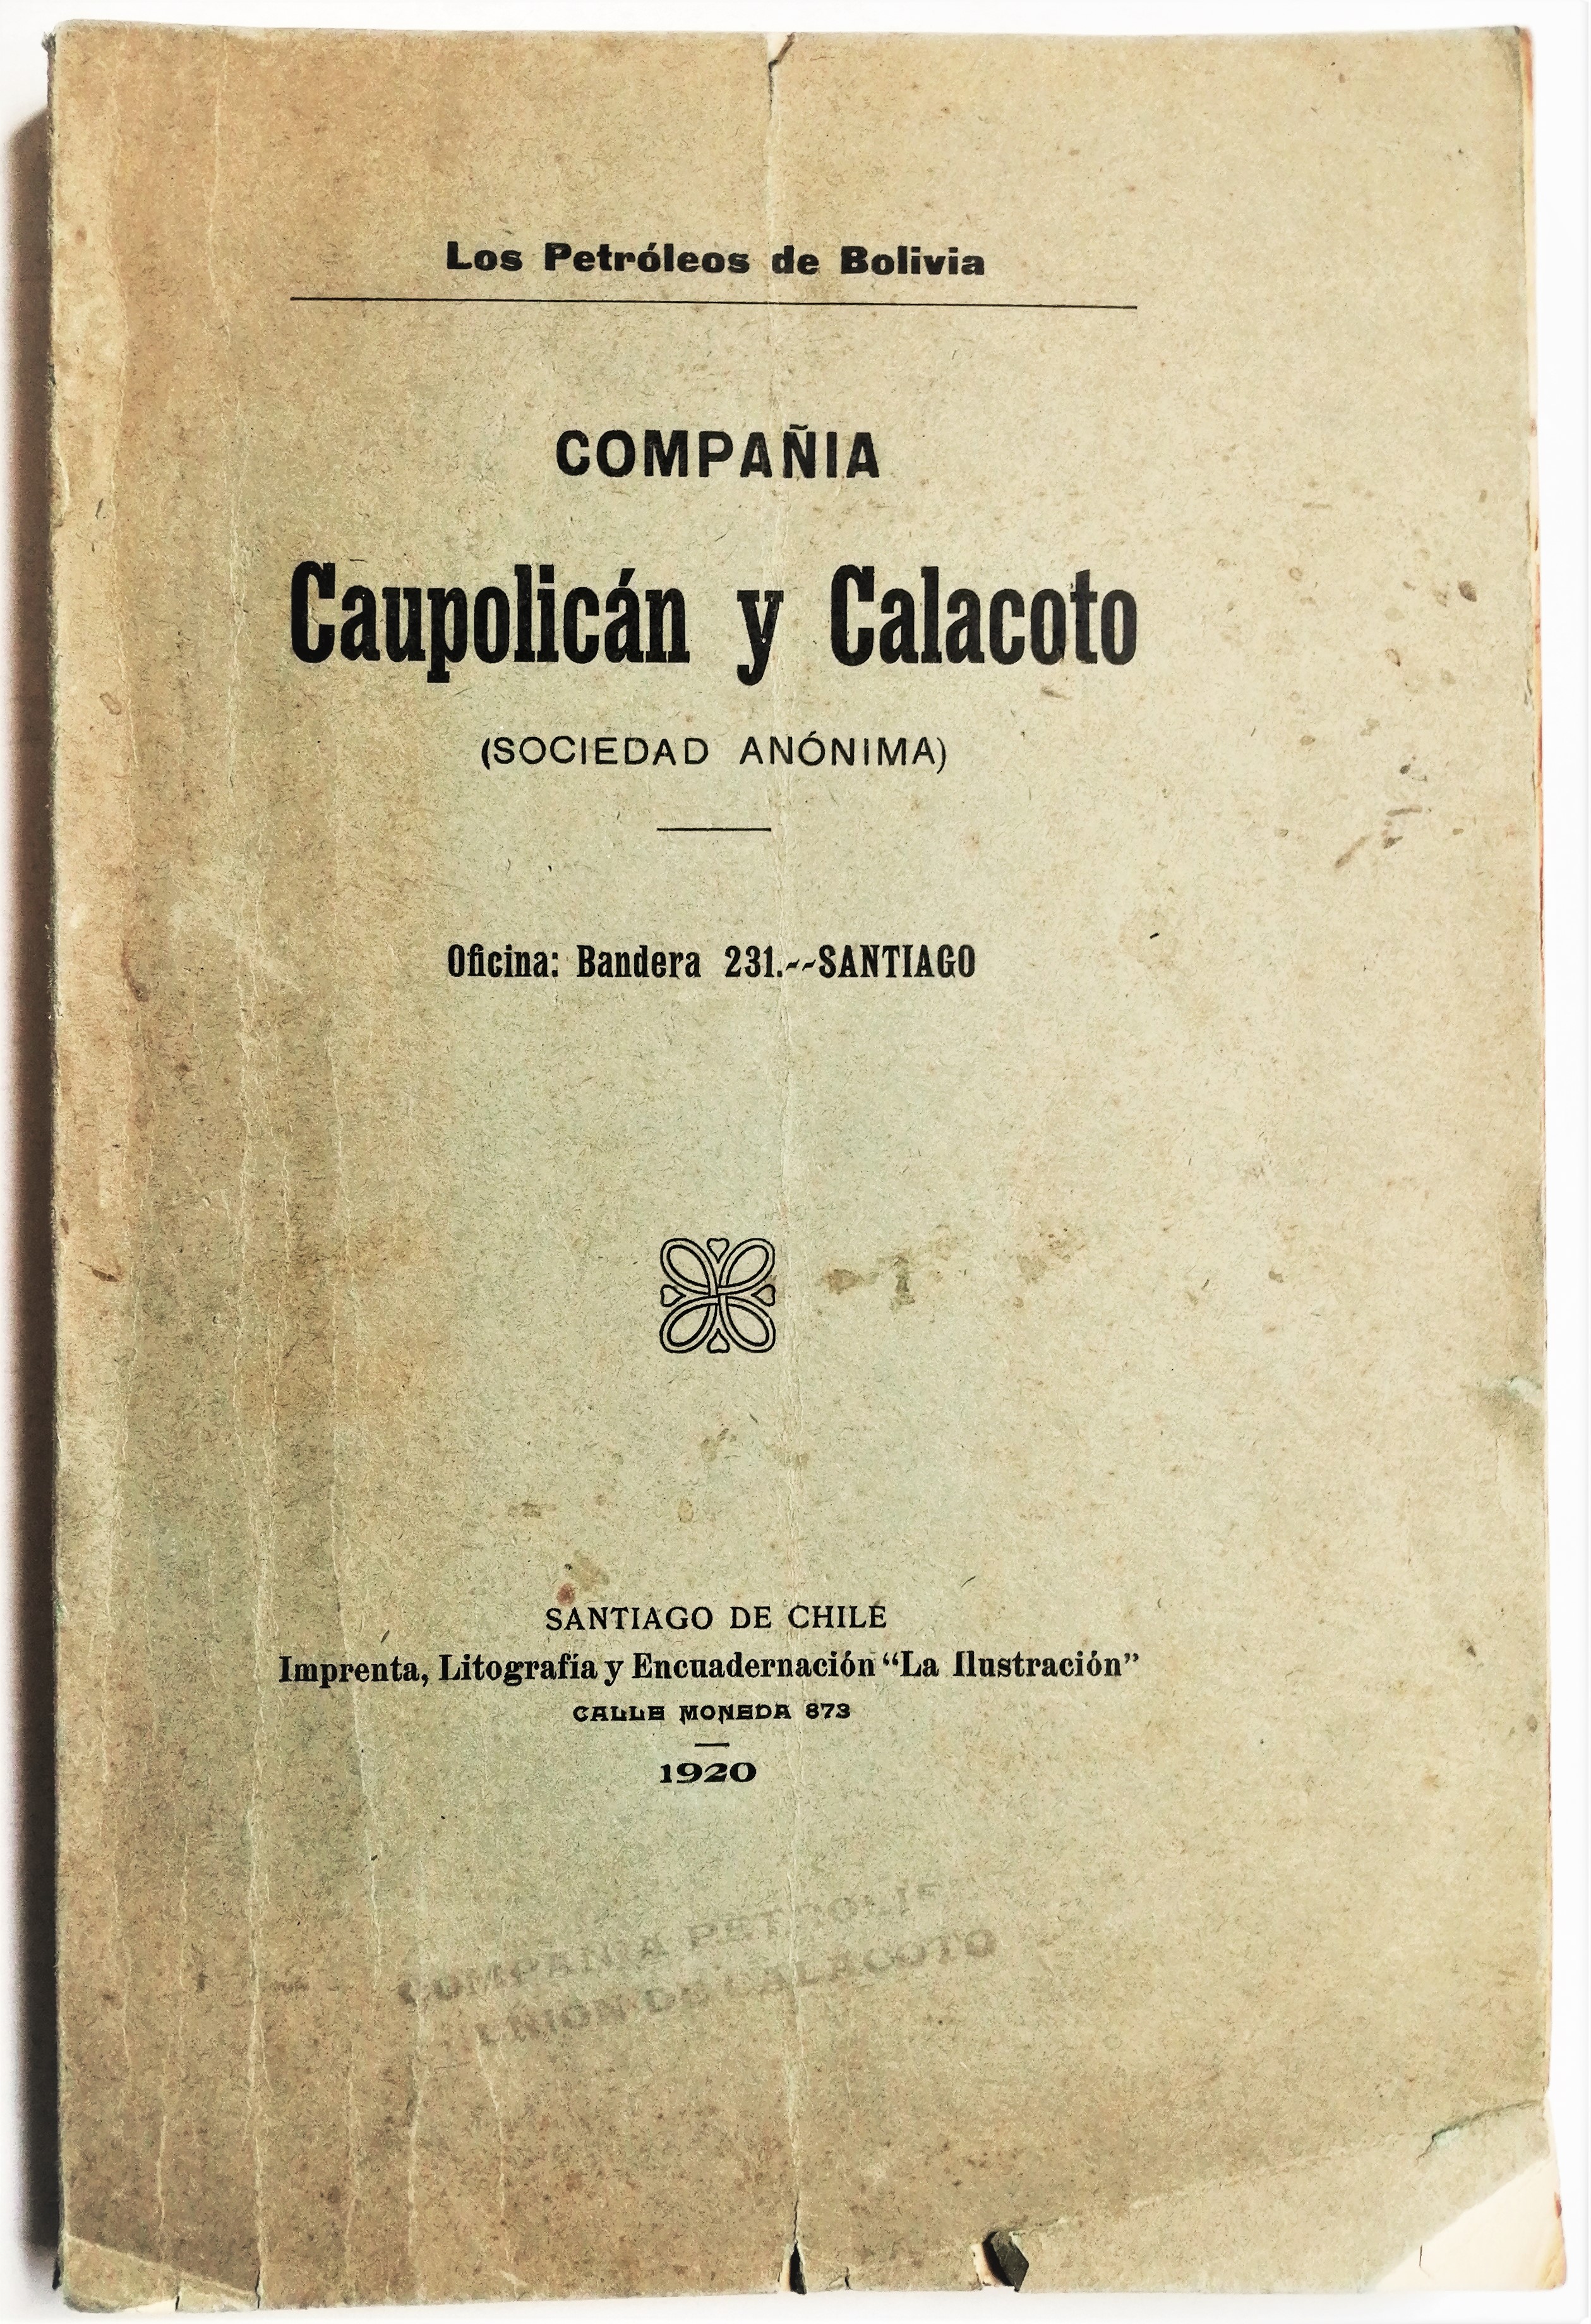 Compañía Caupolicán y Calacoto